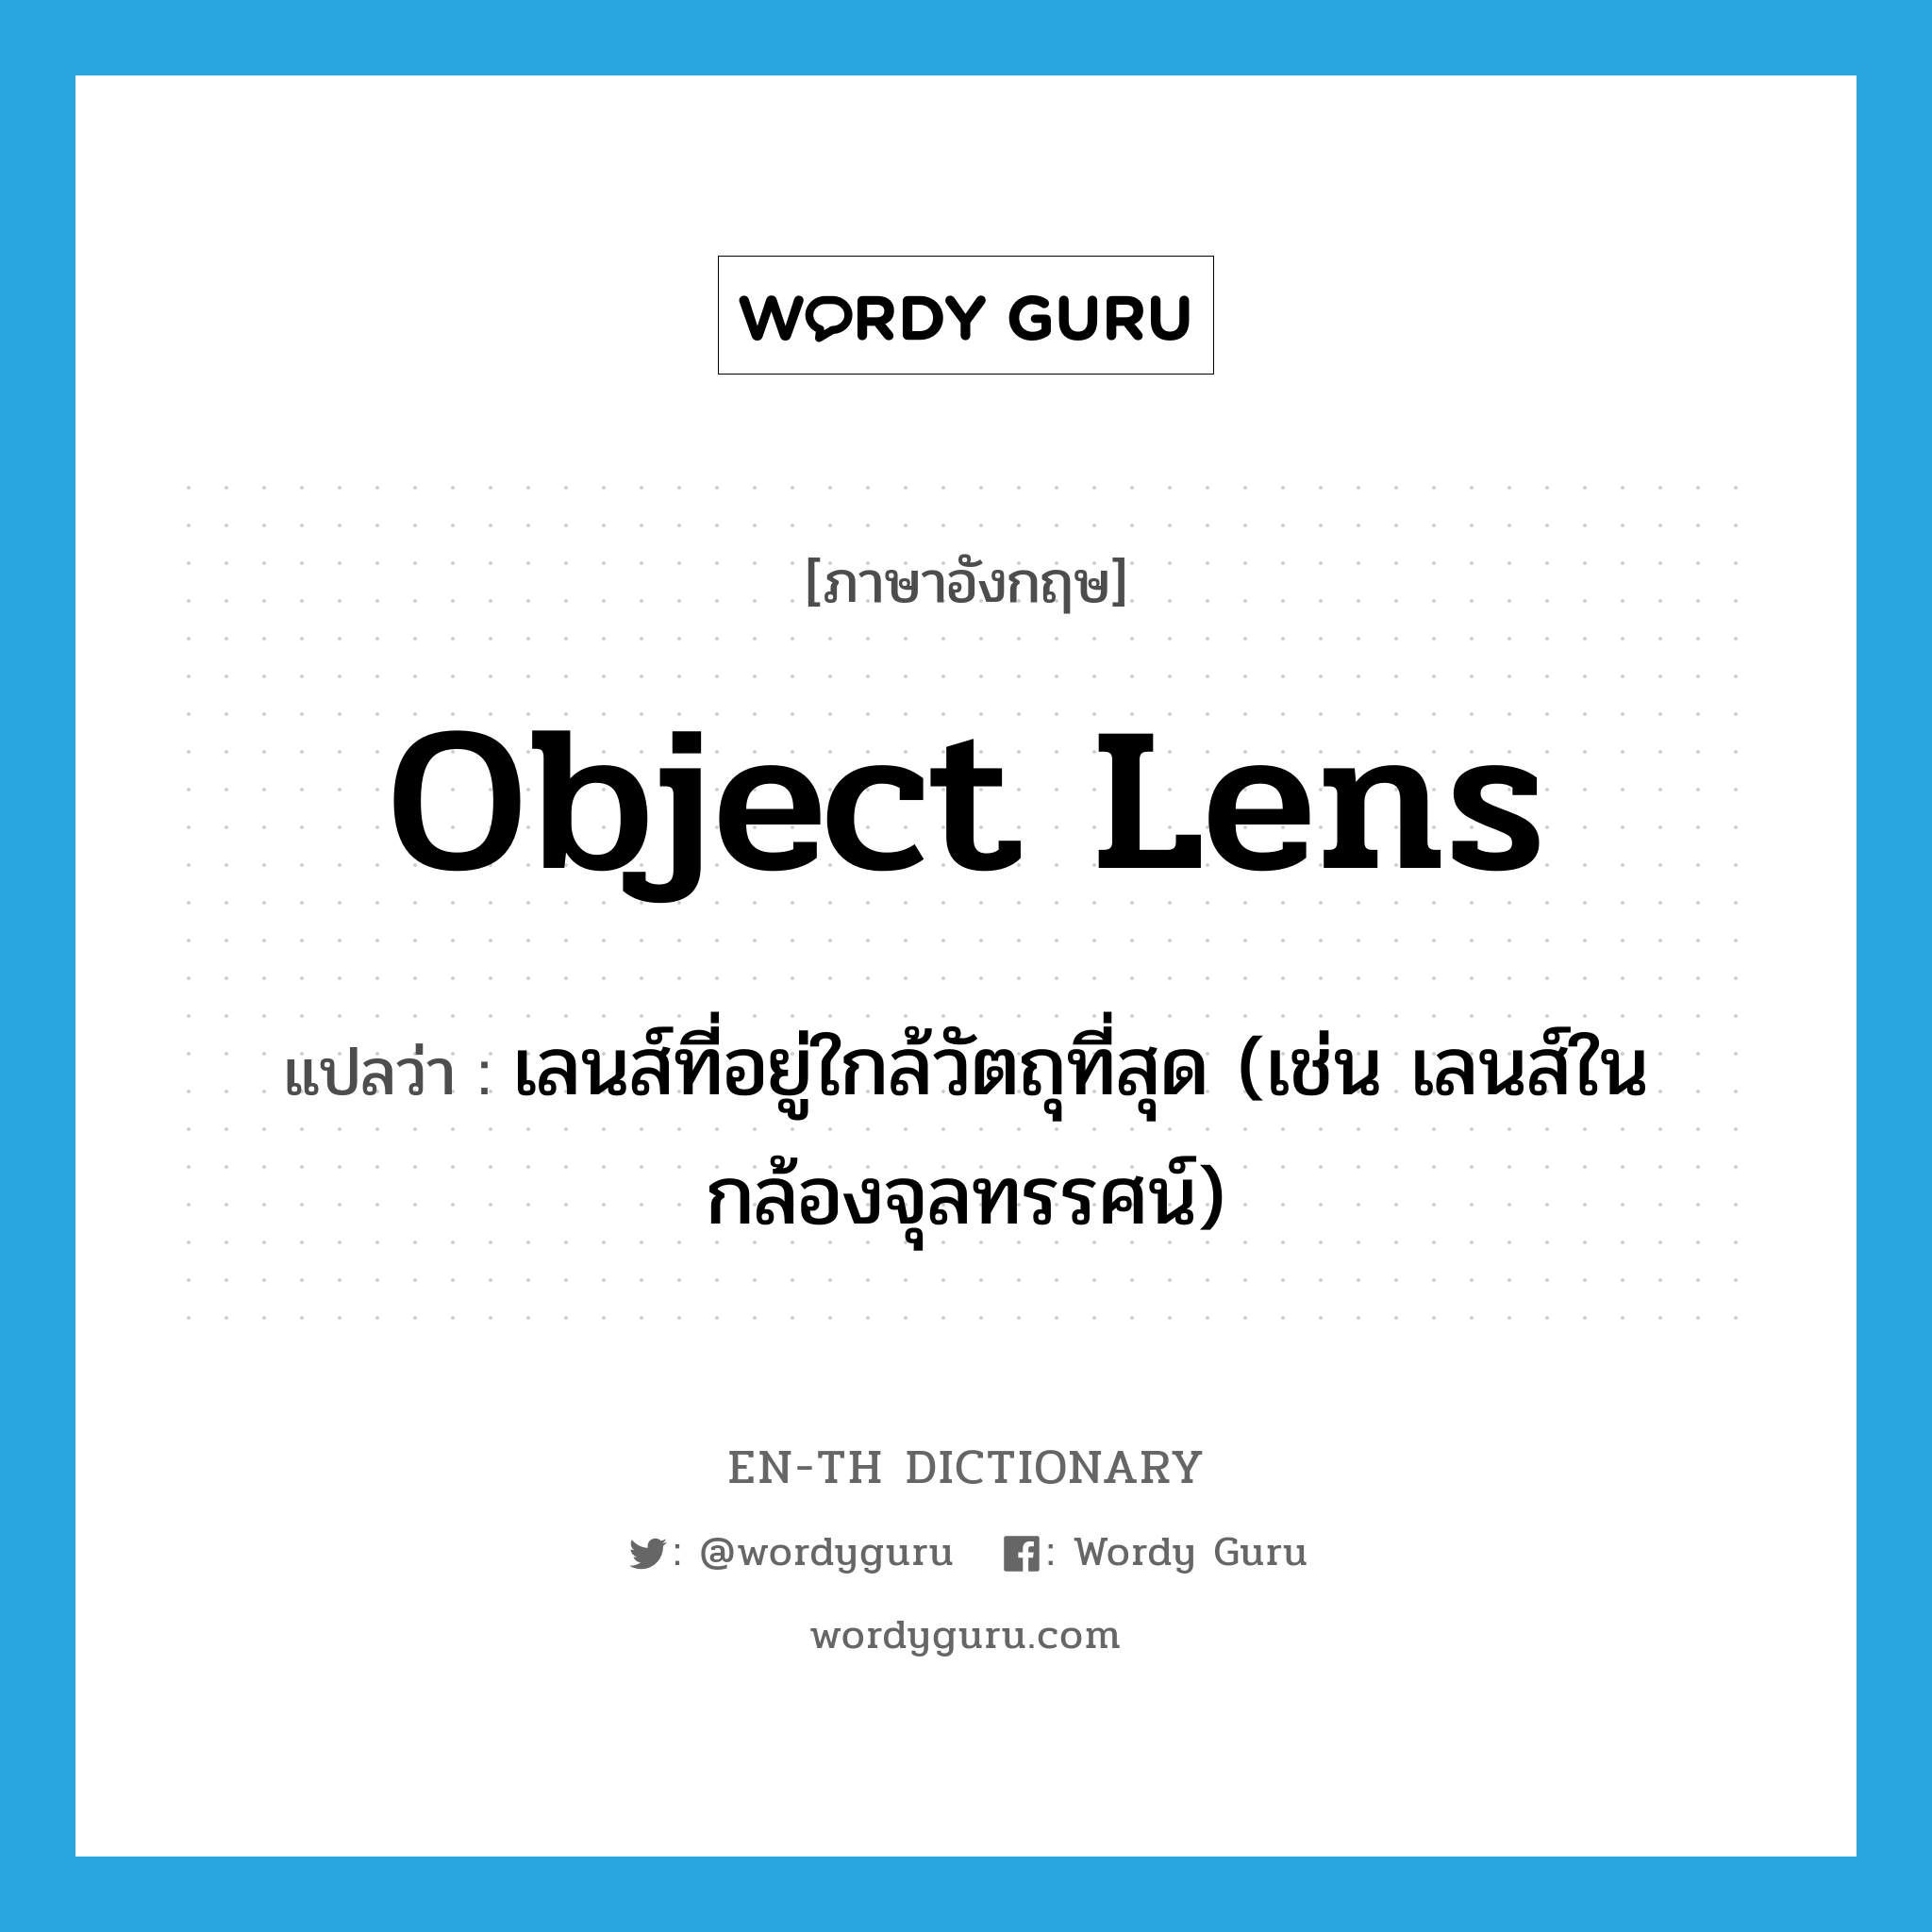 เลนส์ที่อยู่ใกล้วัตถุที่สุด (เช่น เลนส์ในกล้องจุลทรรศน์) ภาษาอังกฤษ?, คำศัพท์ภาษาอังกฤษ เลนส์ที่อยู่ใกล้วัตถุที่สุด (เช่น เลนส์ในกล้องจุลทรรศน์) แปลว่า object lens ประเภท N หมวด N